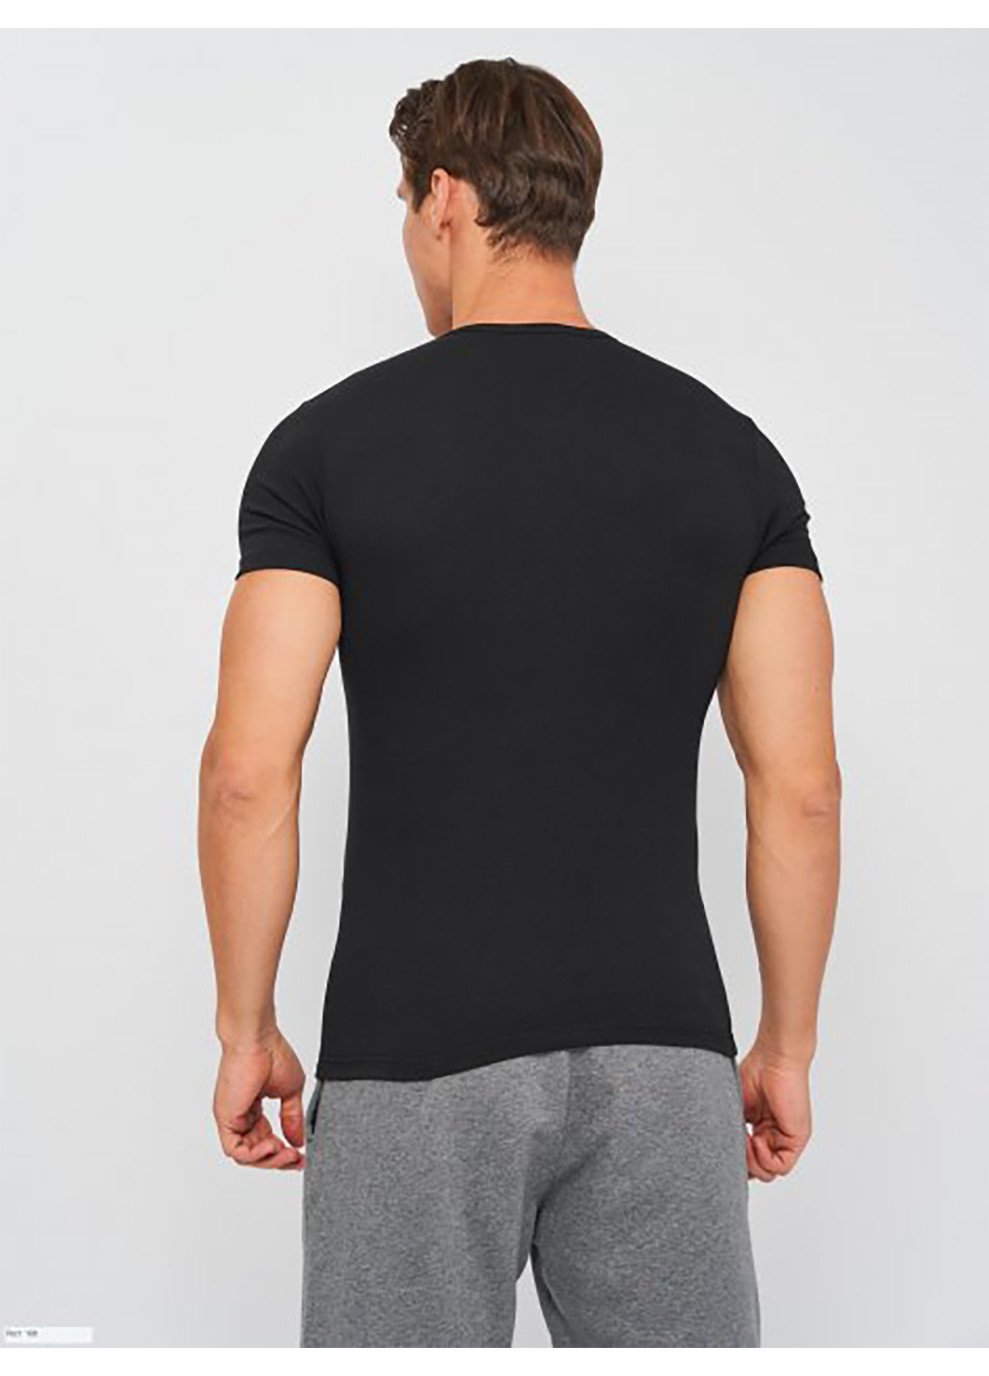 Чорна футболка t-shirt mezza manica girocollo чорний 2xlчоловік k1305 nero-2xl Kappa